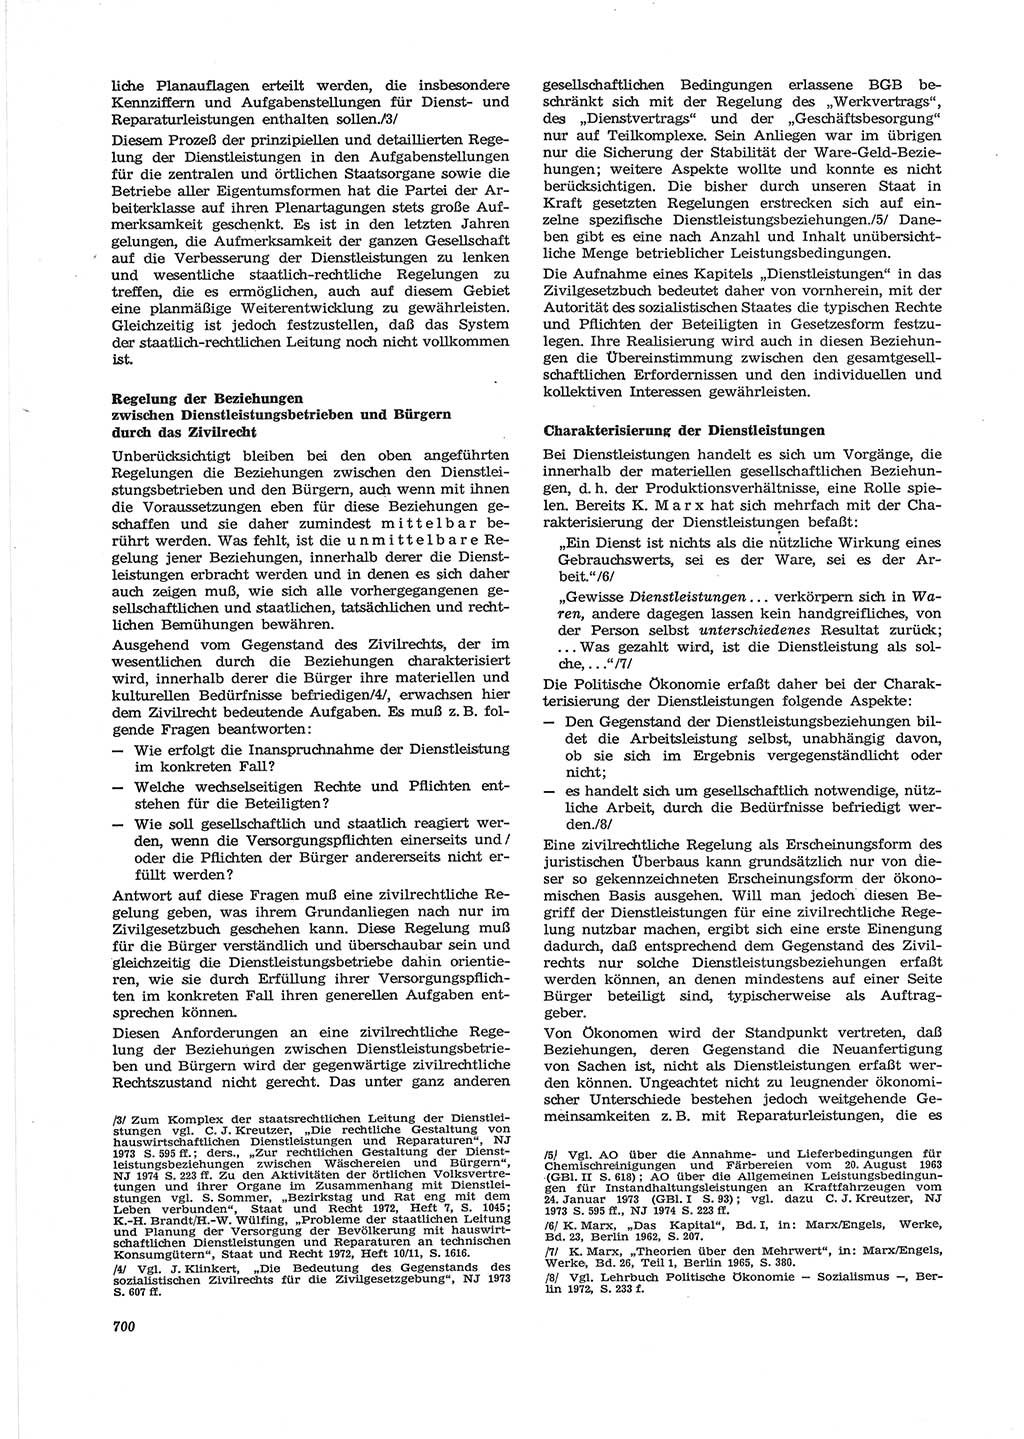 Neue Justiz (NJ), Zeitschrift für Recht und Rechtswissenschaft [Deutsche Demokratische Republik (DDR)], 28. Jahrgang 1974, Seite 700 (NJ DDR 1974, S. 700)